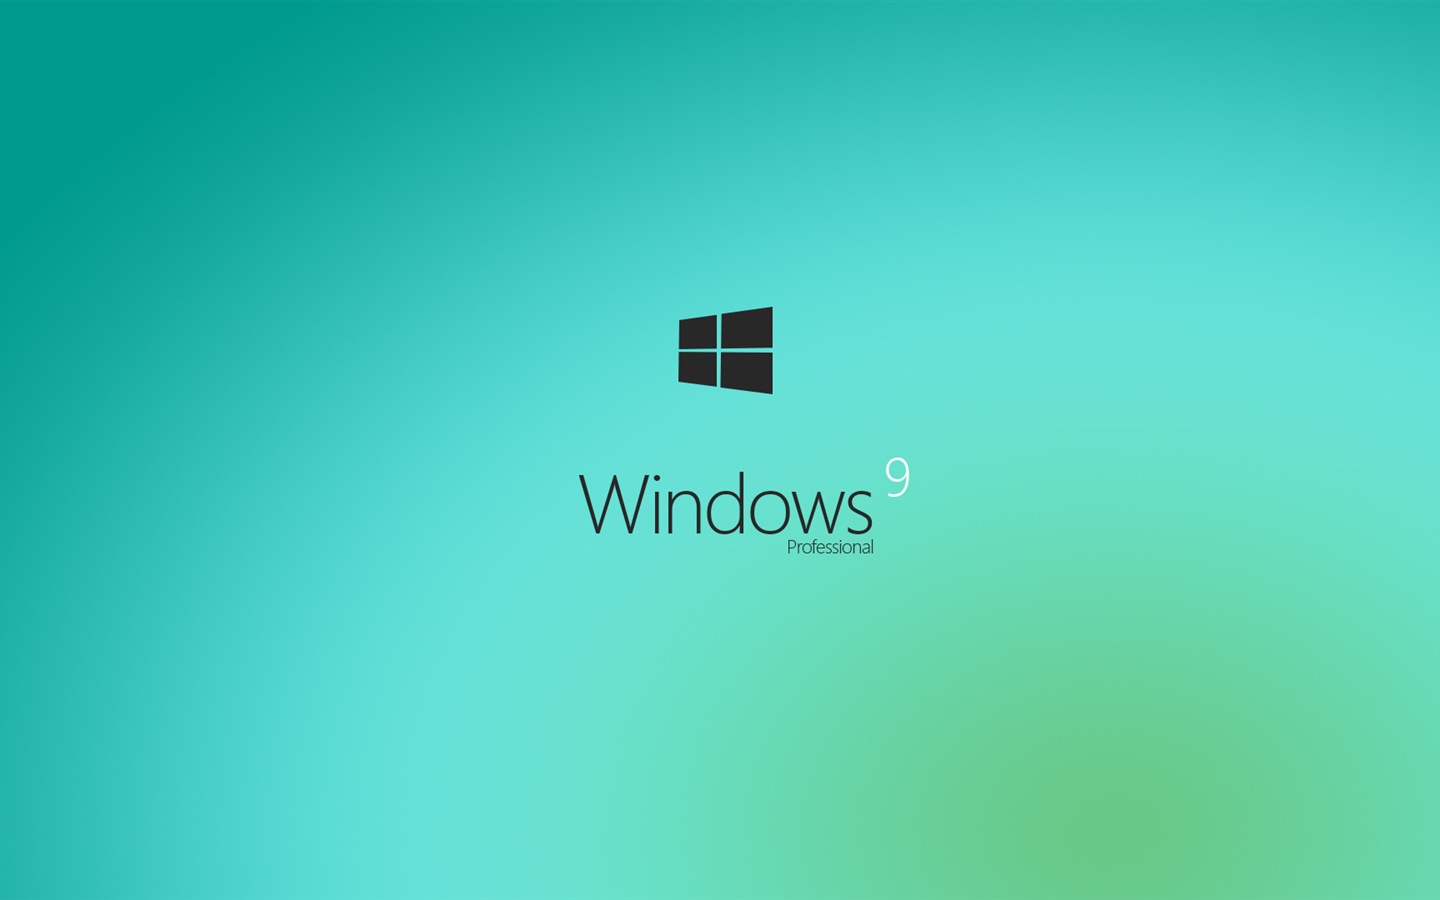 Microsoft Windowsの9システムテーマのHD壁紙 #3 - 1440x900